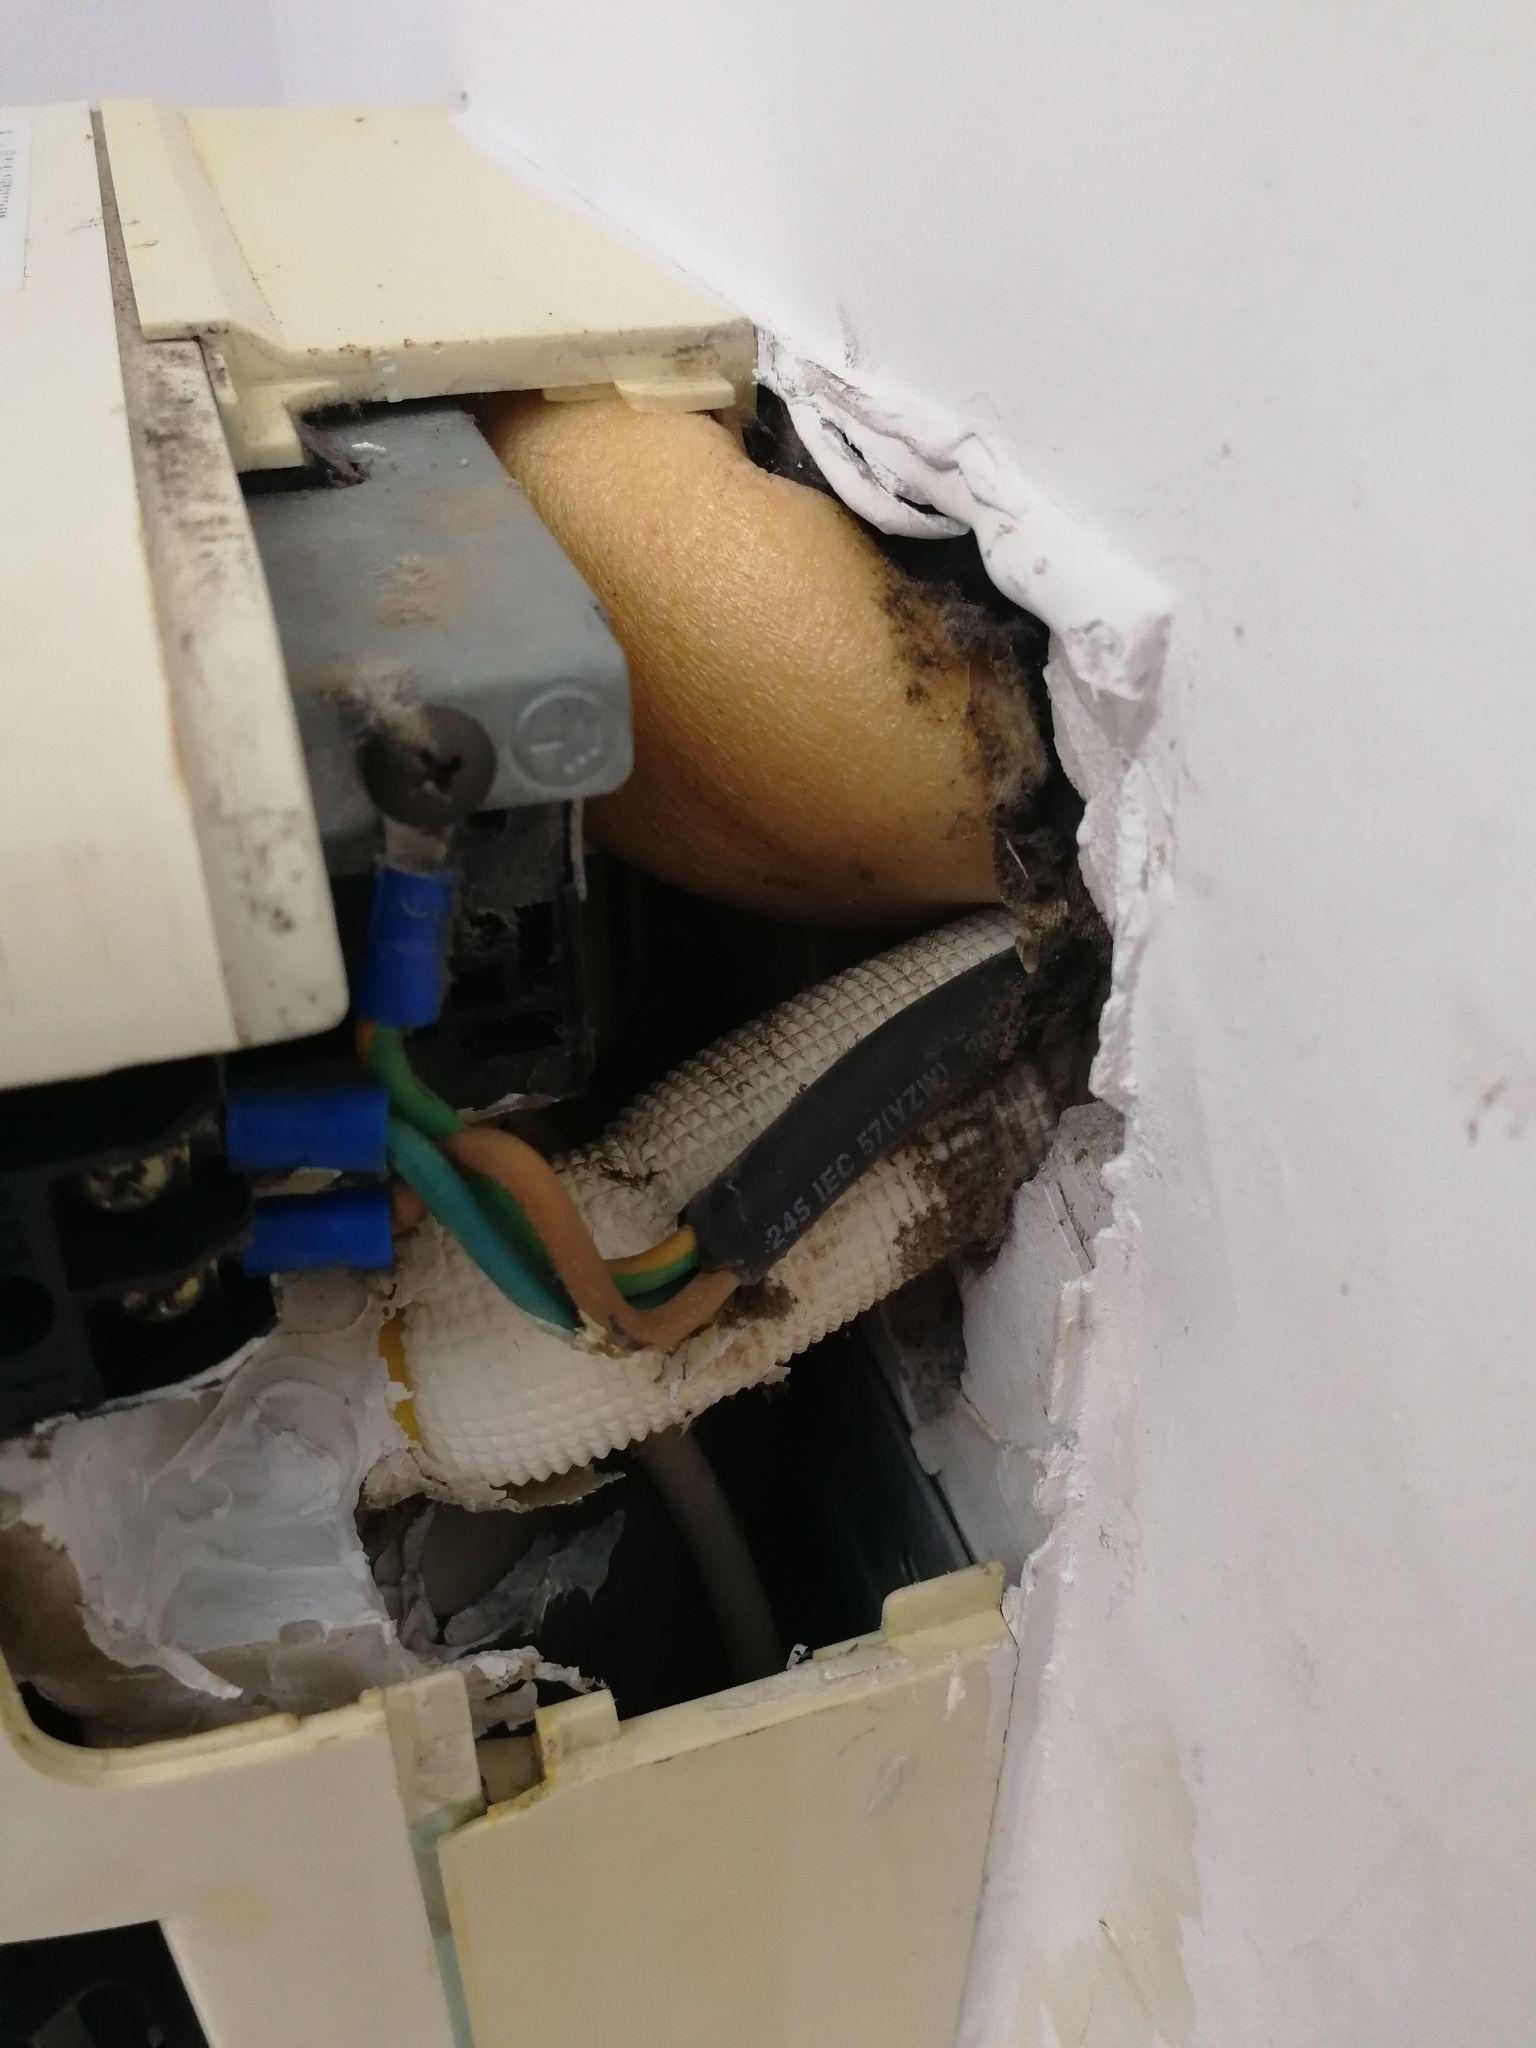 空调室内挂机最近突然漏水该怎么办